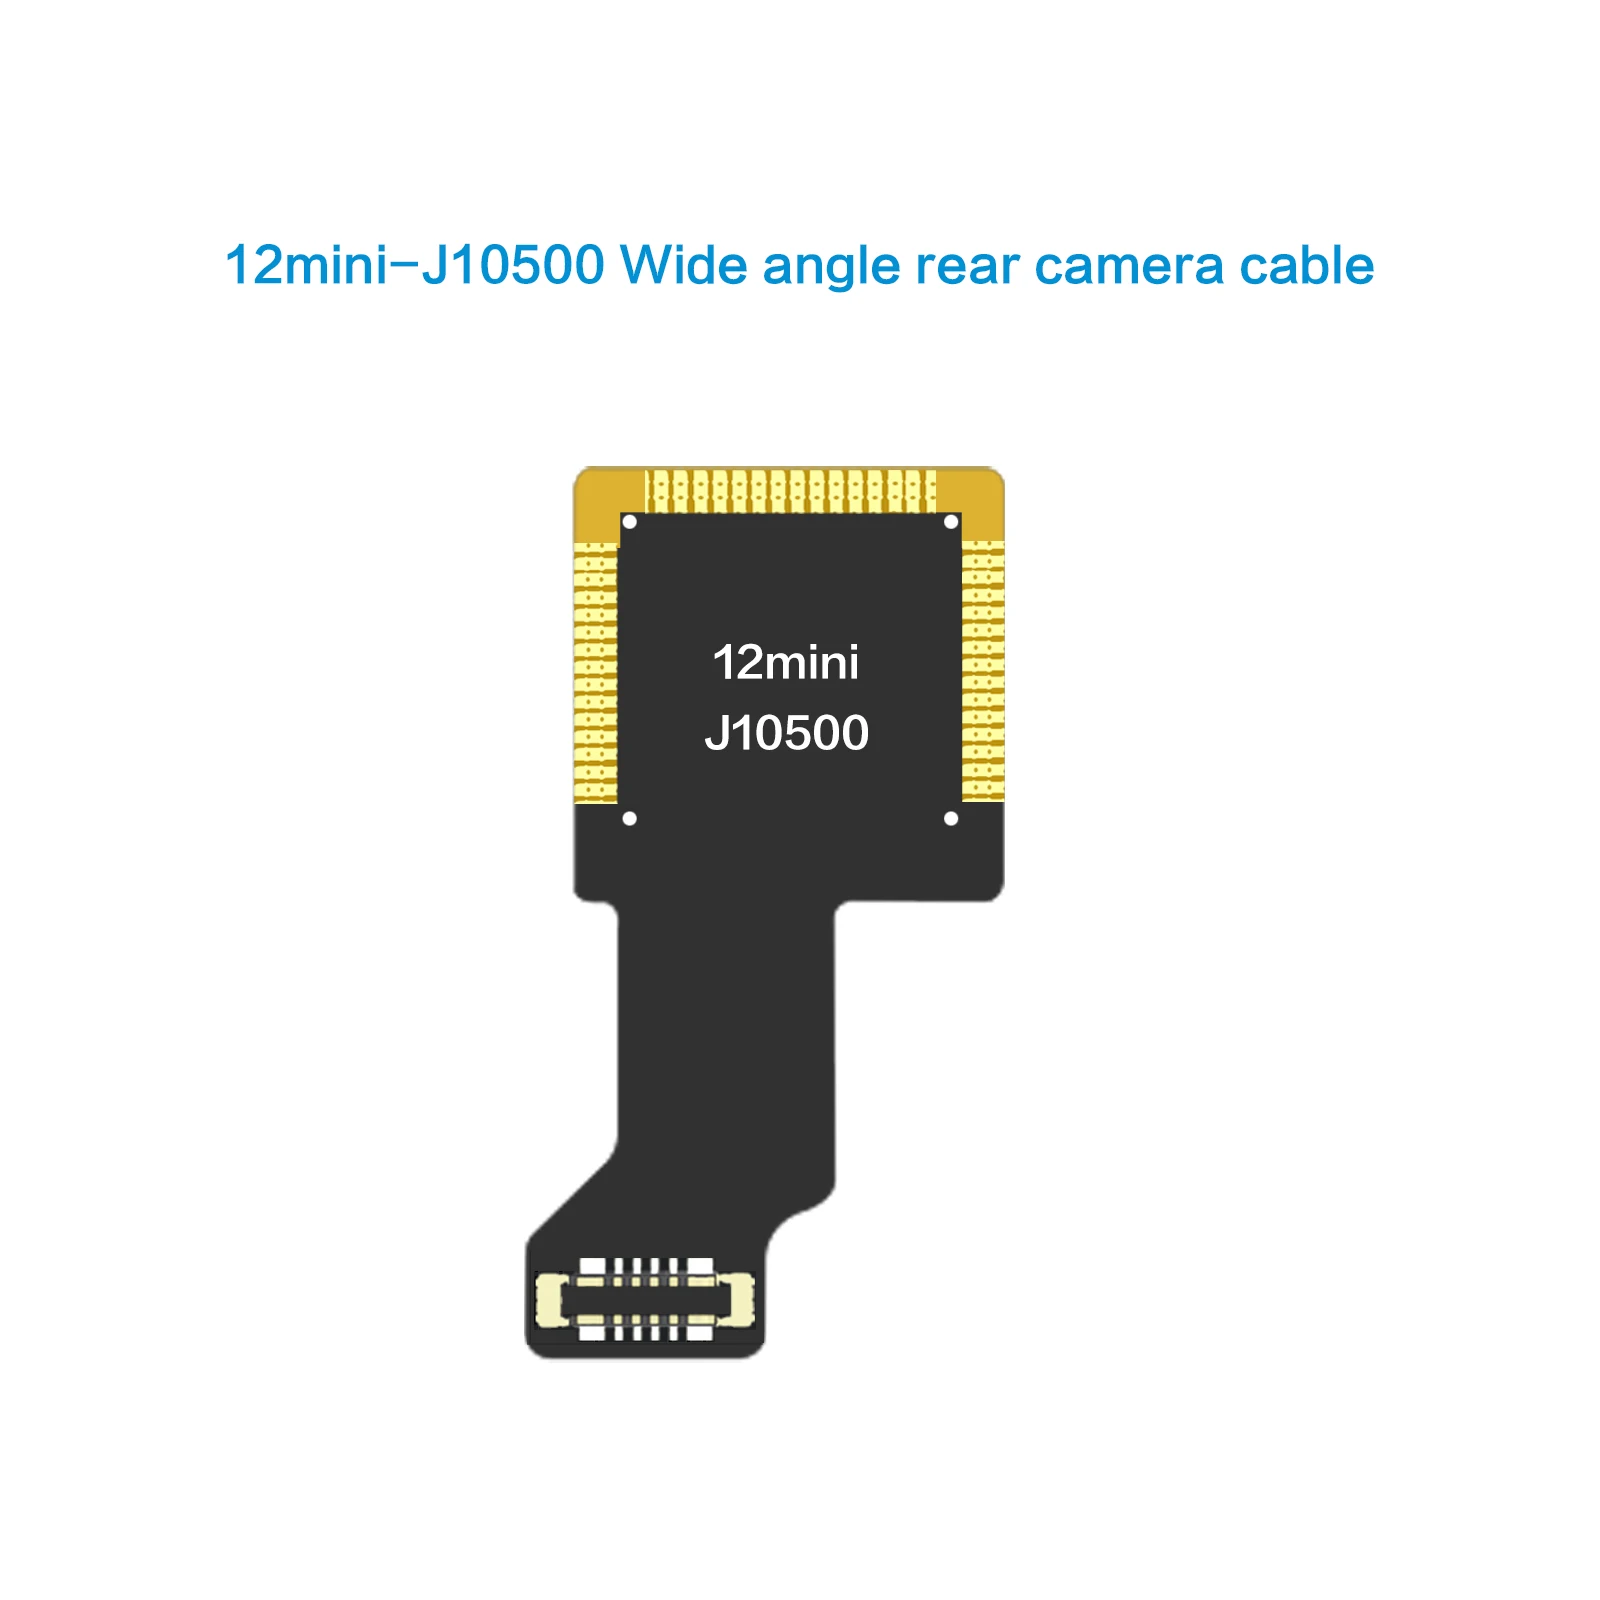 Гибкий кабель камеры заднего вида I2C для iPhone 12Mini-J10500 с широким углом обзора, комплект запасных частей для ремонта